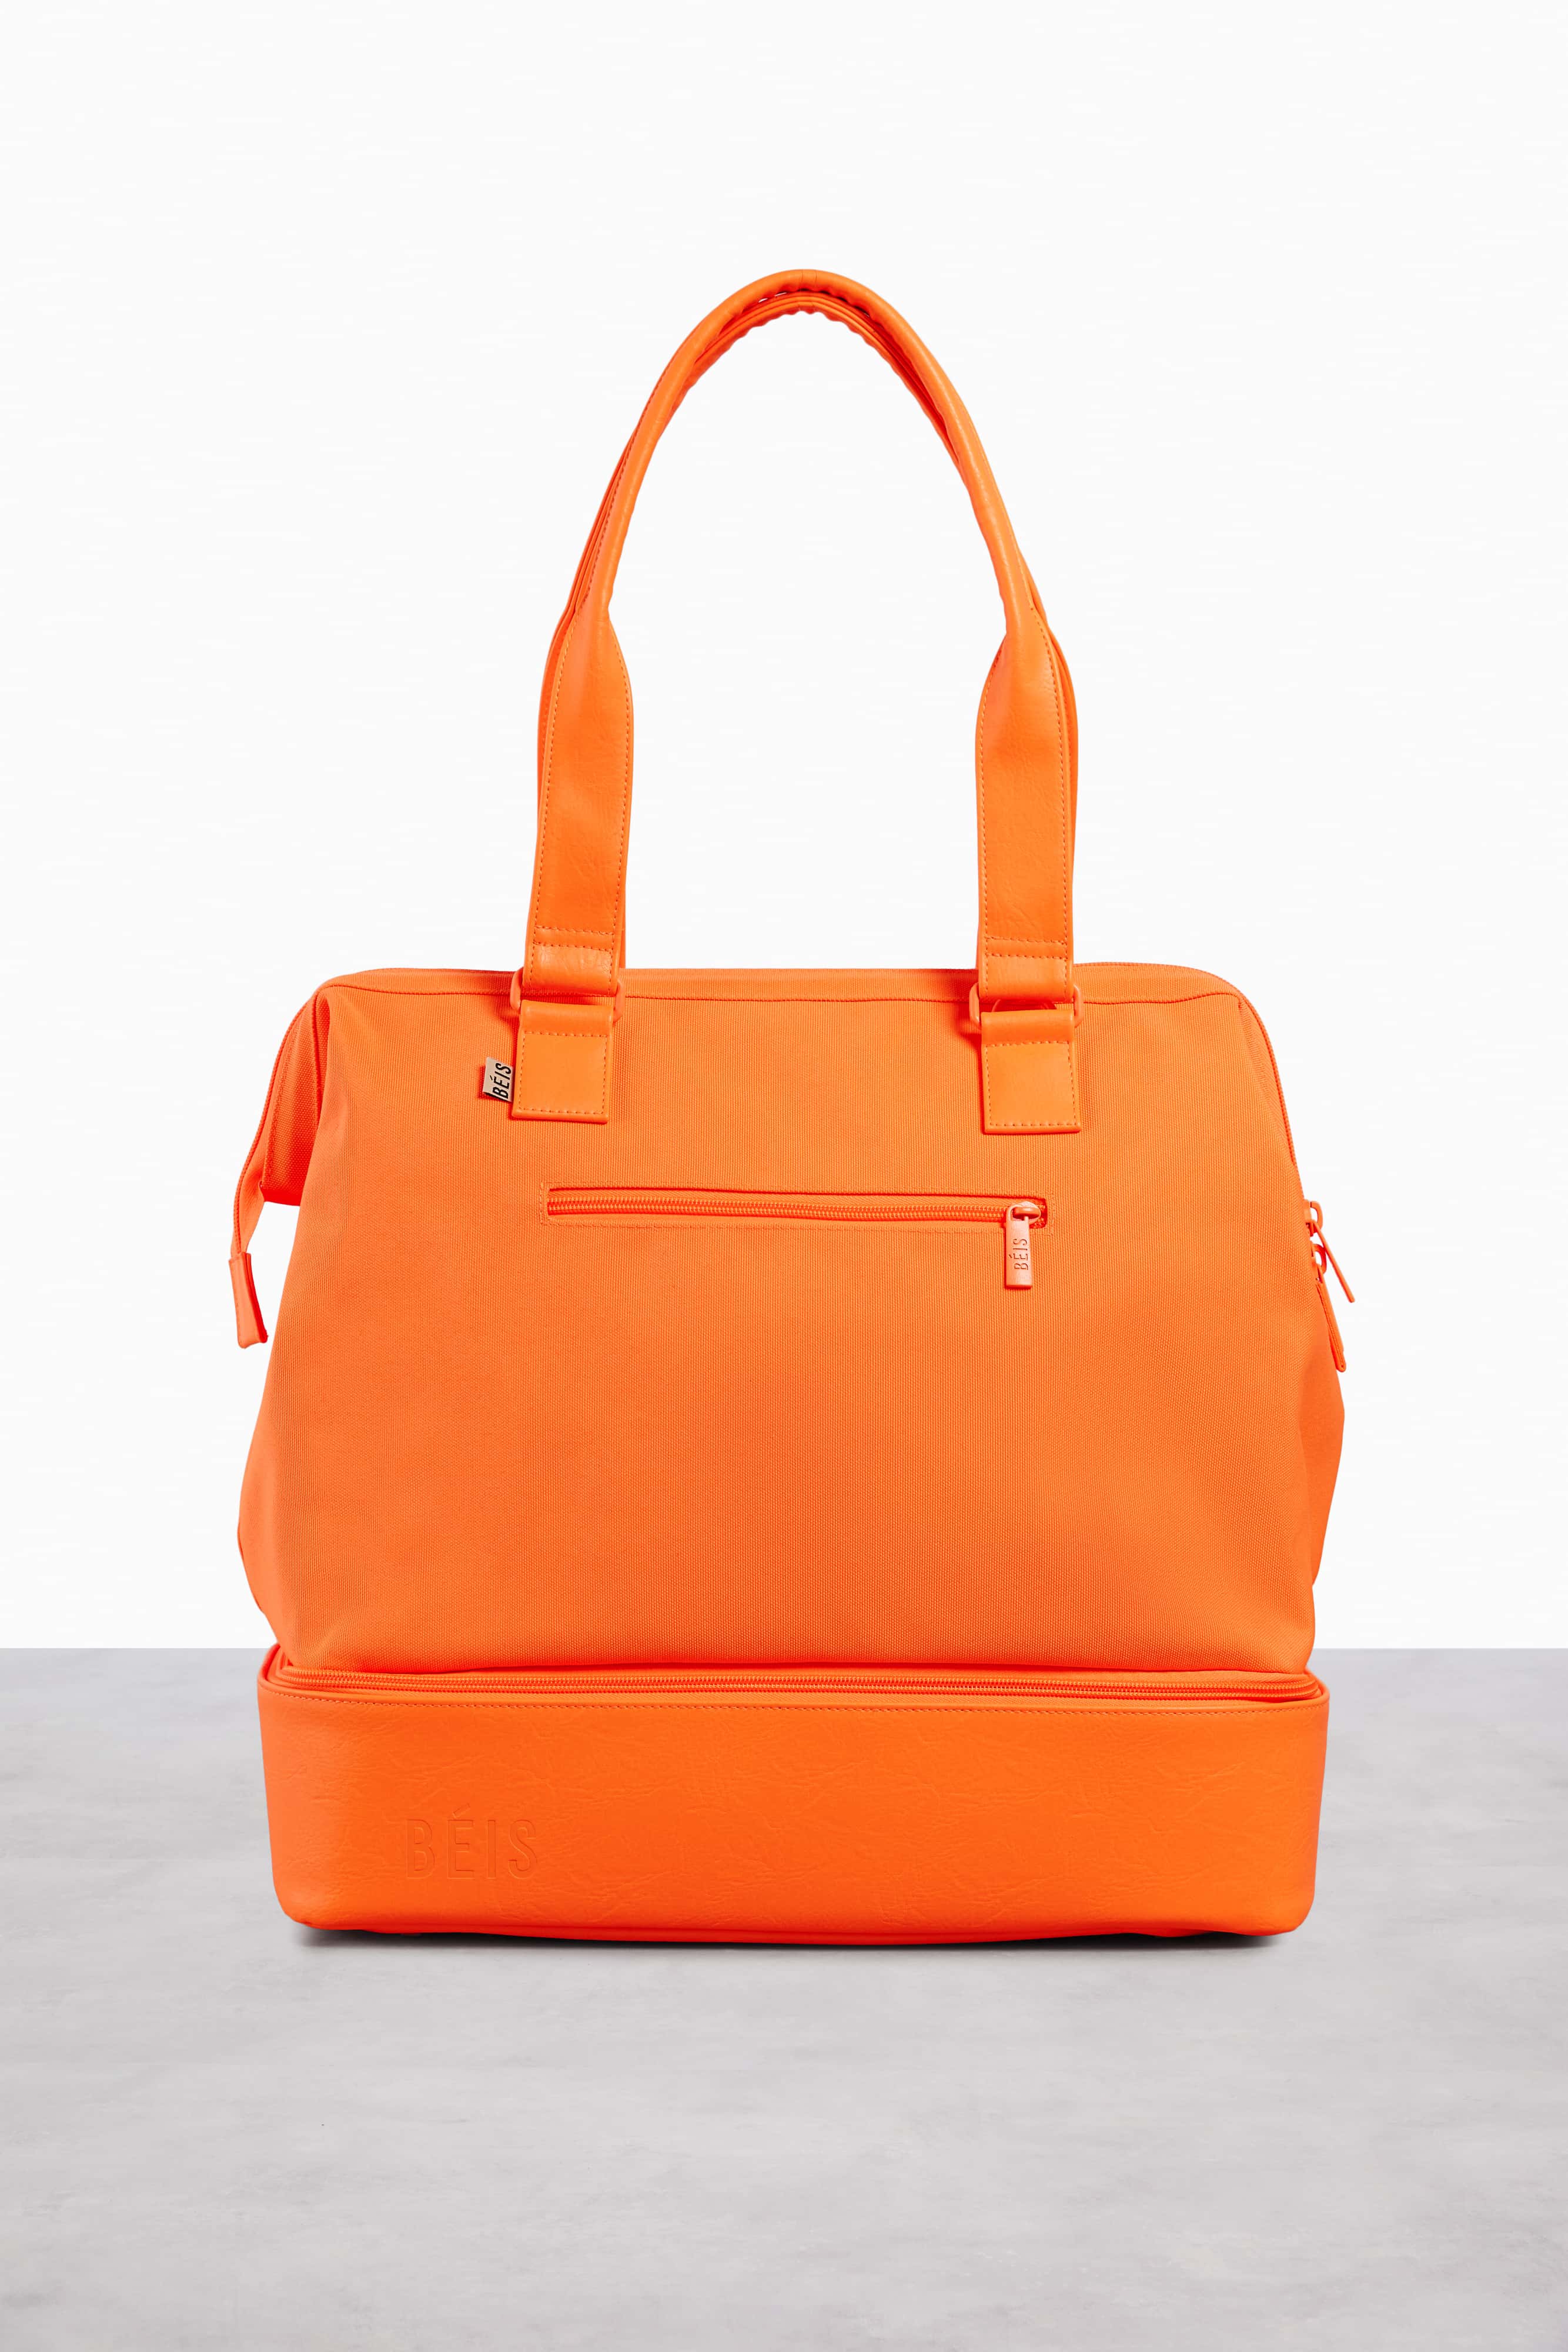 Creamsicle Mini Weekender Orange Small Weekend Bag & Overnight Bag | Béis Travel